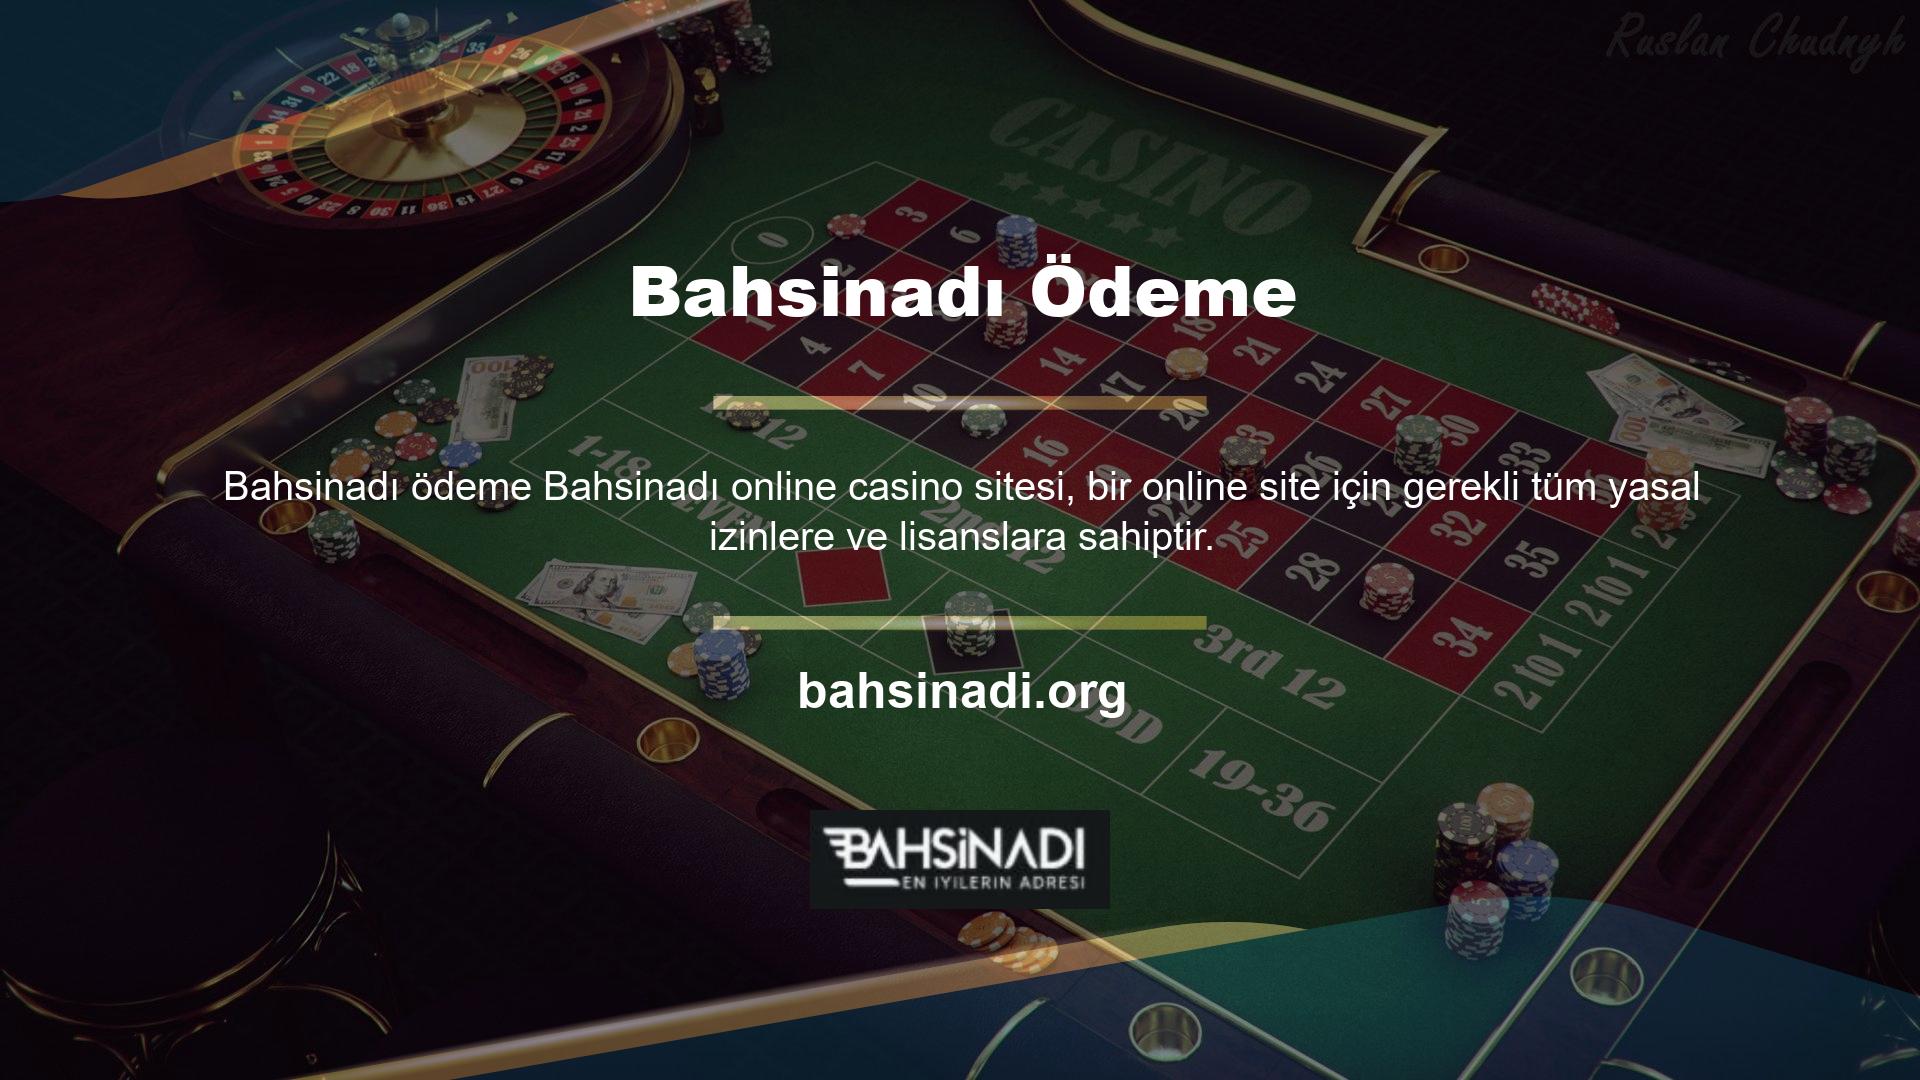 Site bu doğrultuda kullanıcılarına başta spor bahisleri ve casino oyunları olmak üzere farklı alanlarda hizmet vermektedir